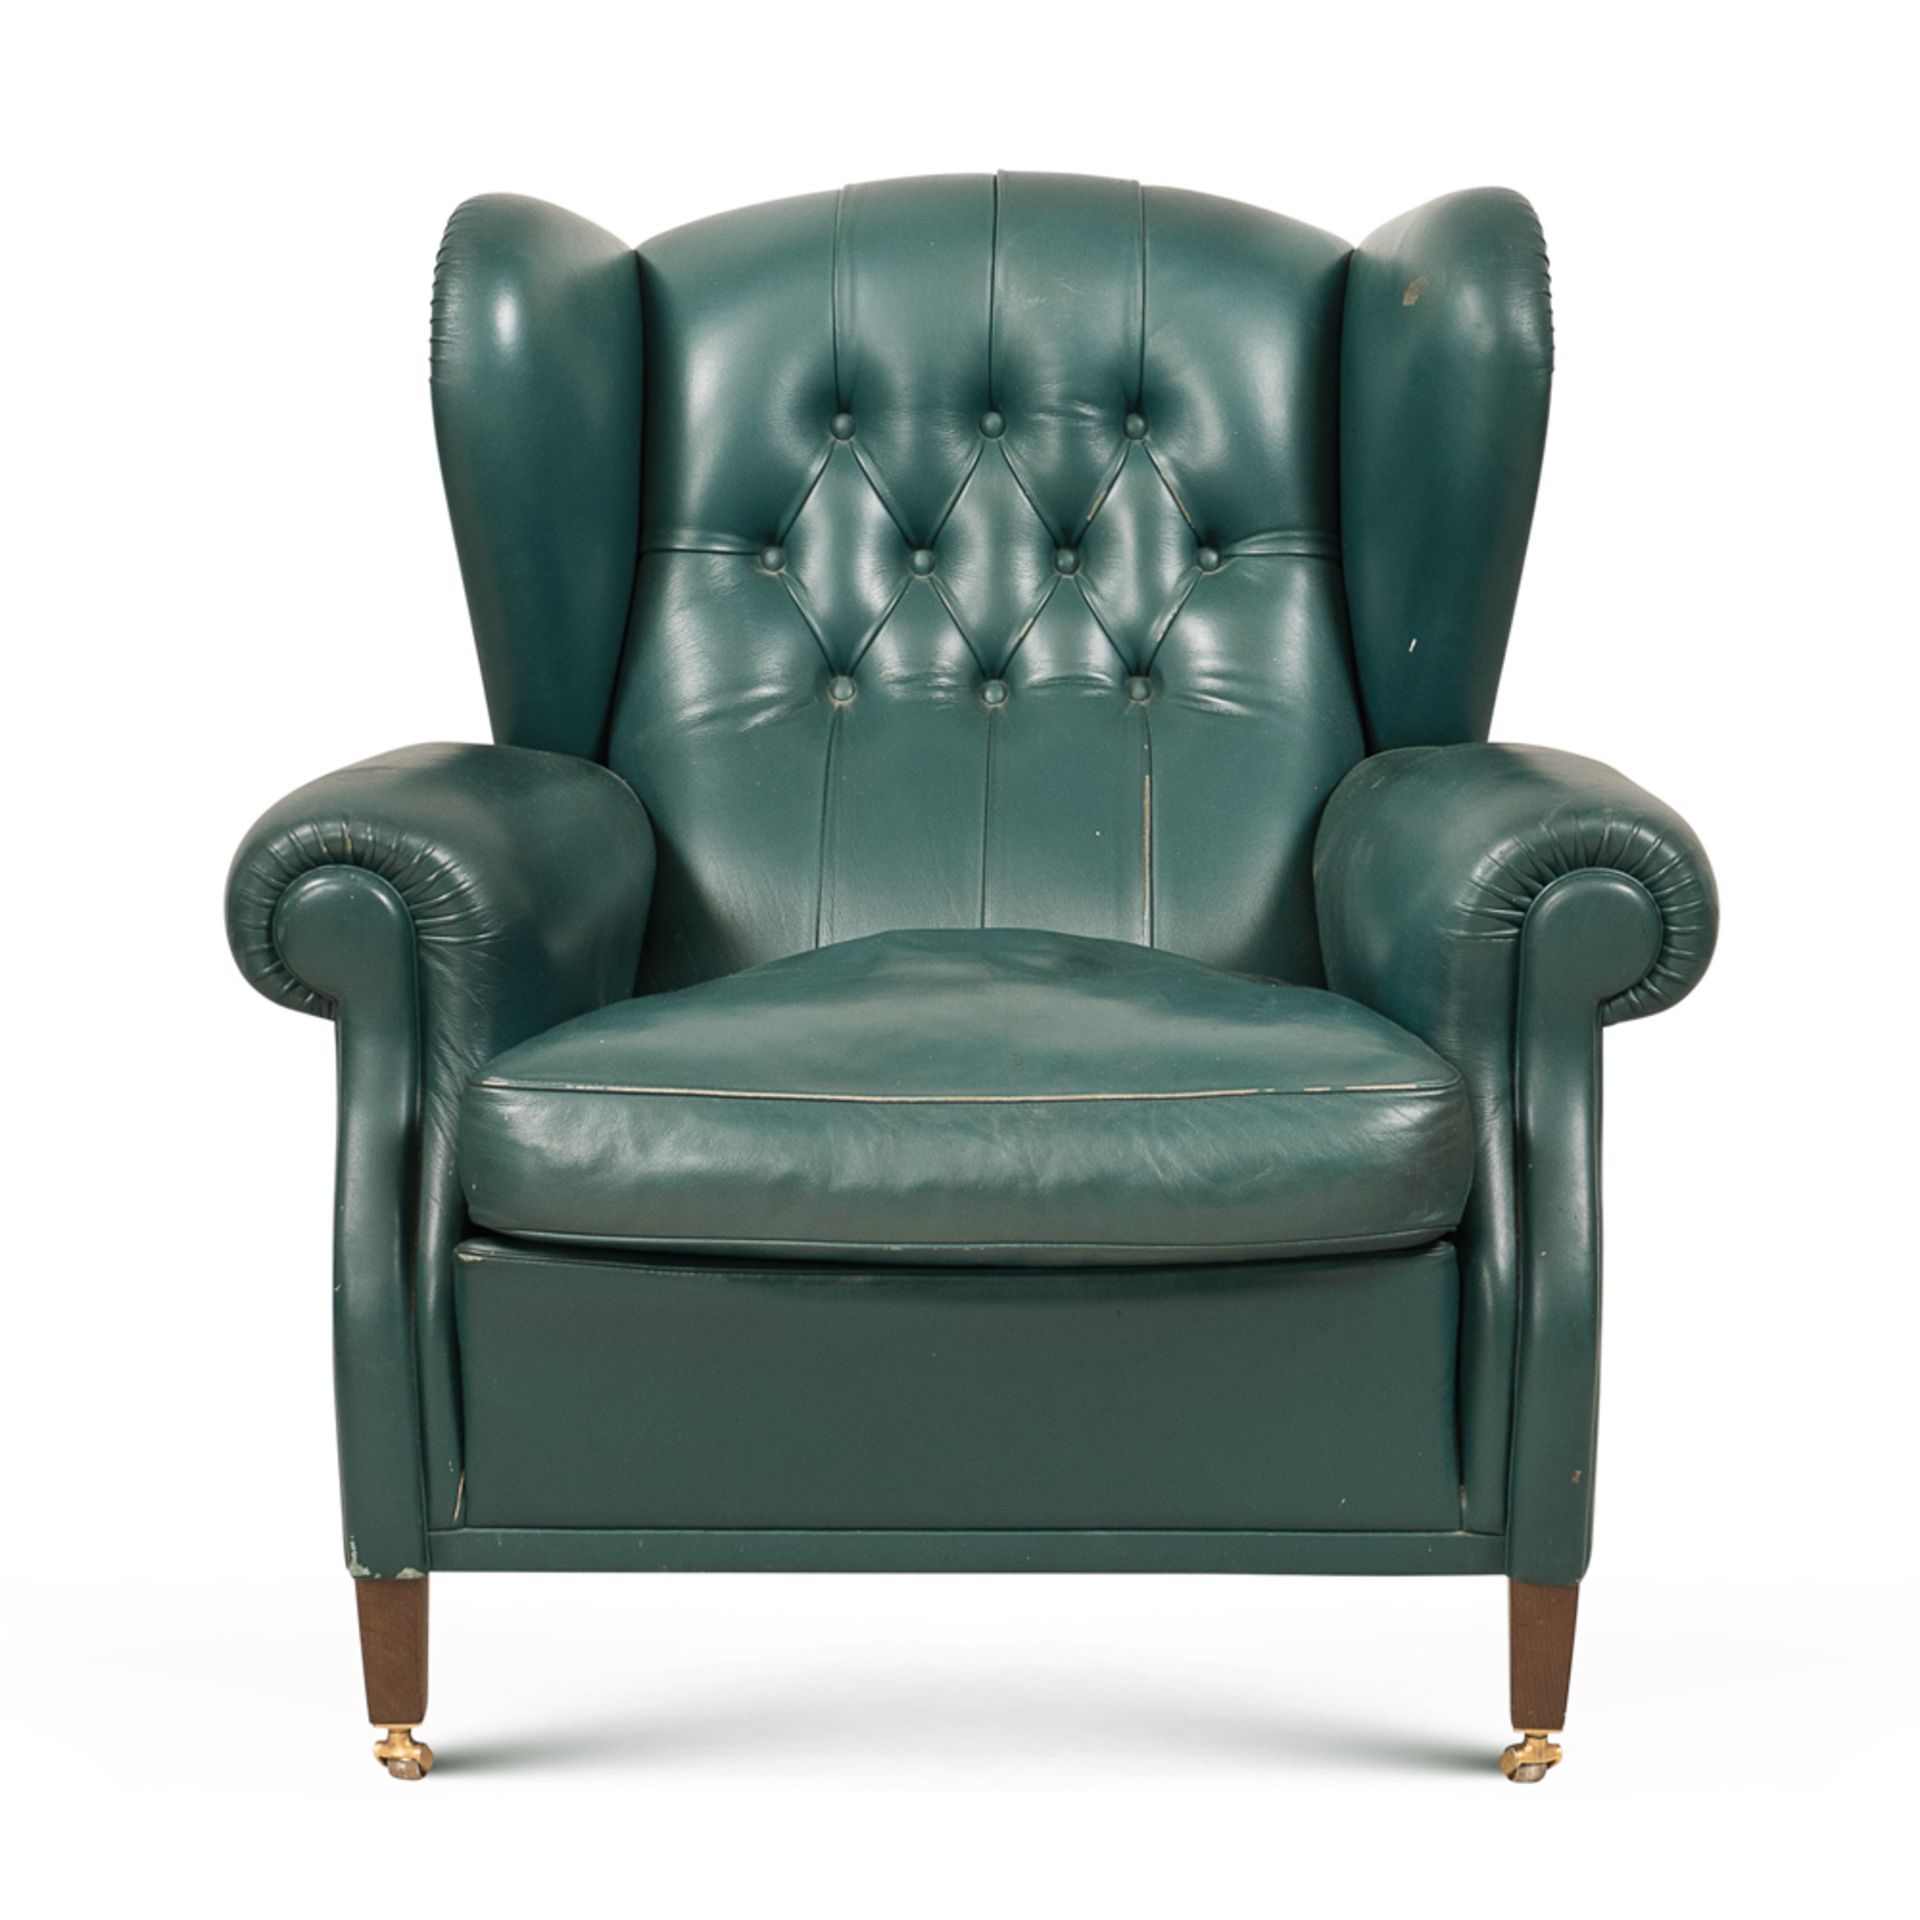 Frau armchair, designer Renzo Frau Italy, 20th century 93x95x95 cm.